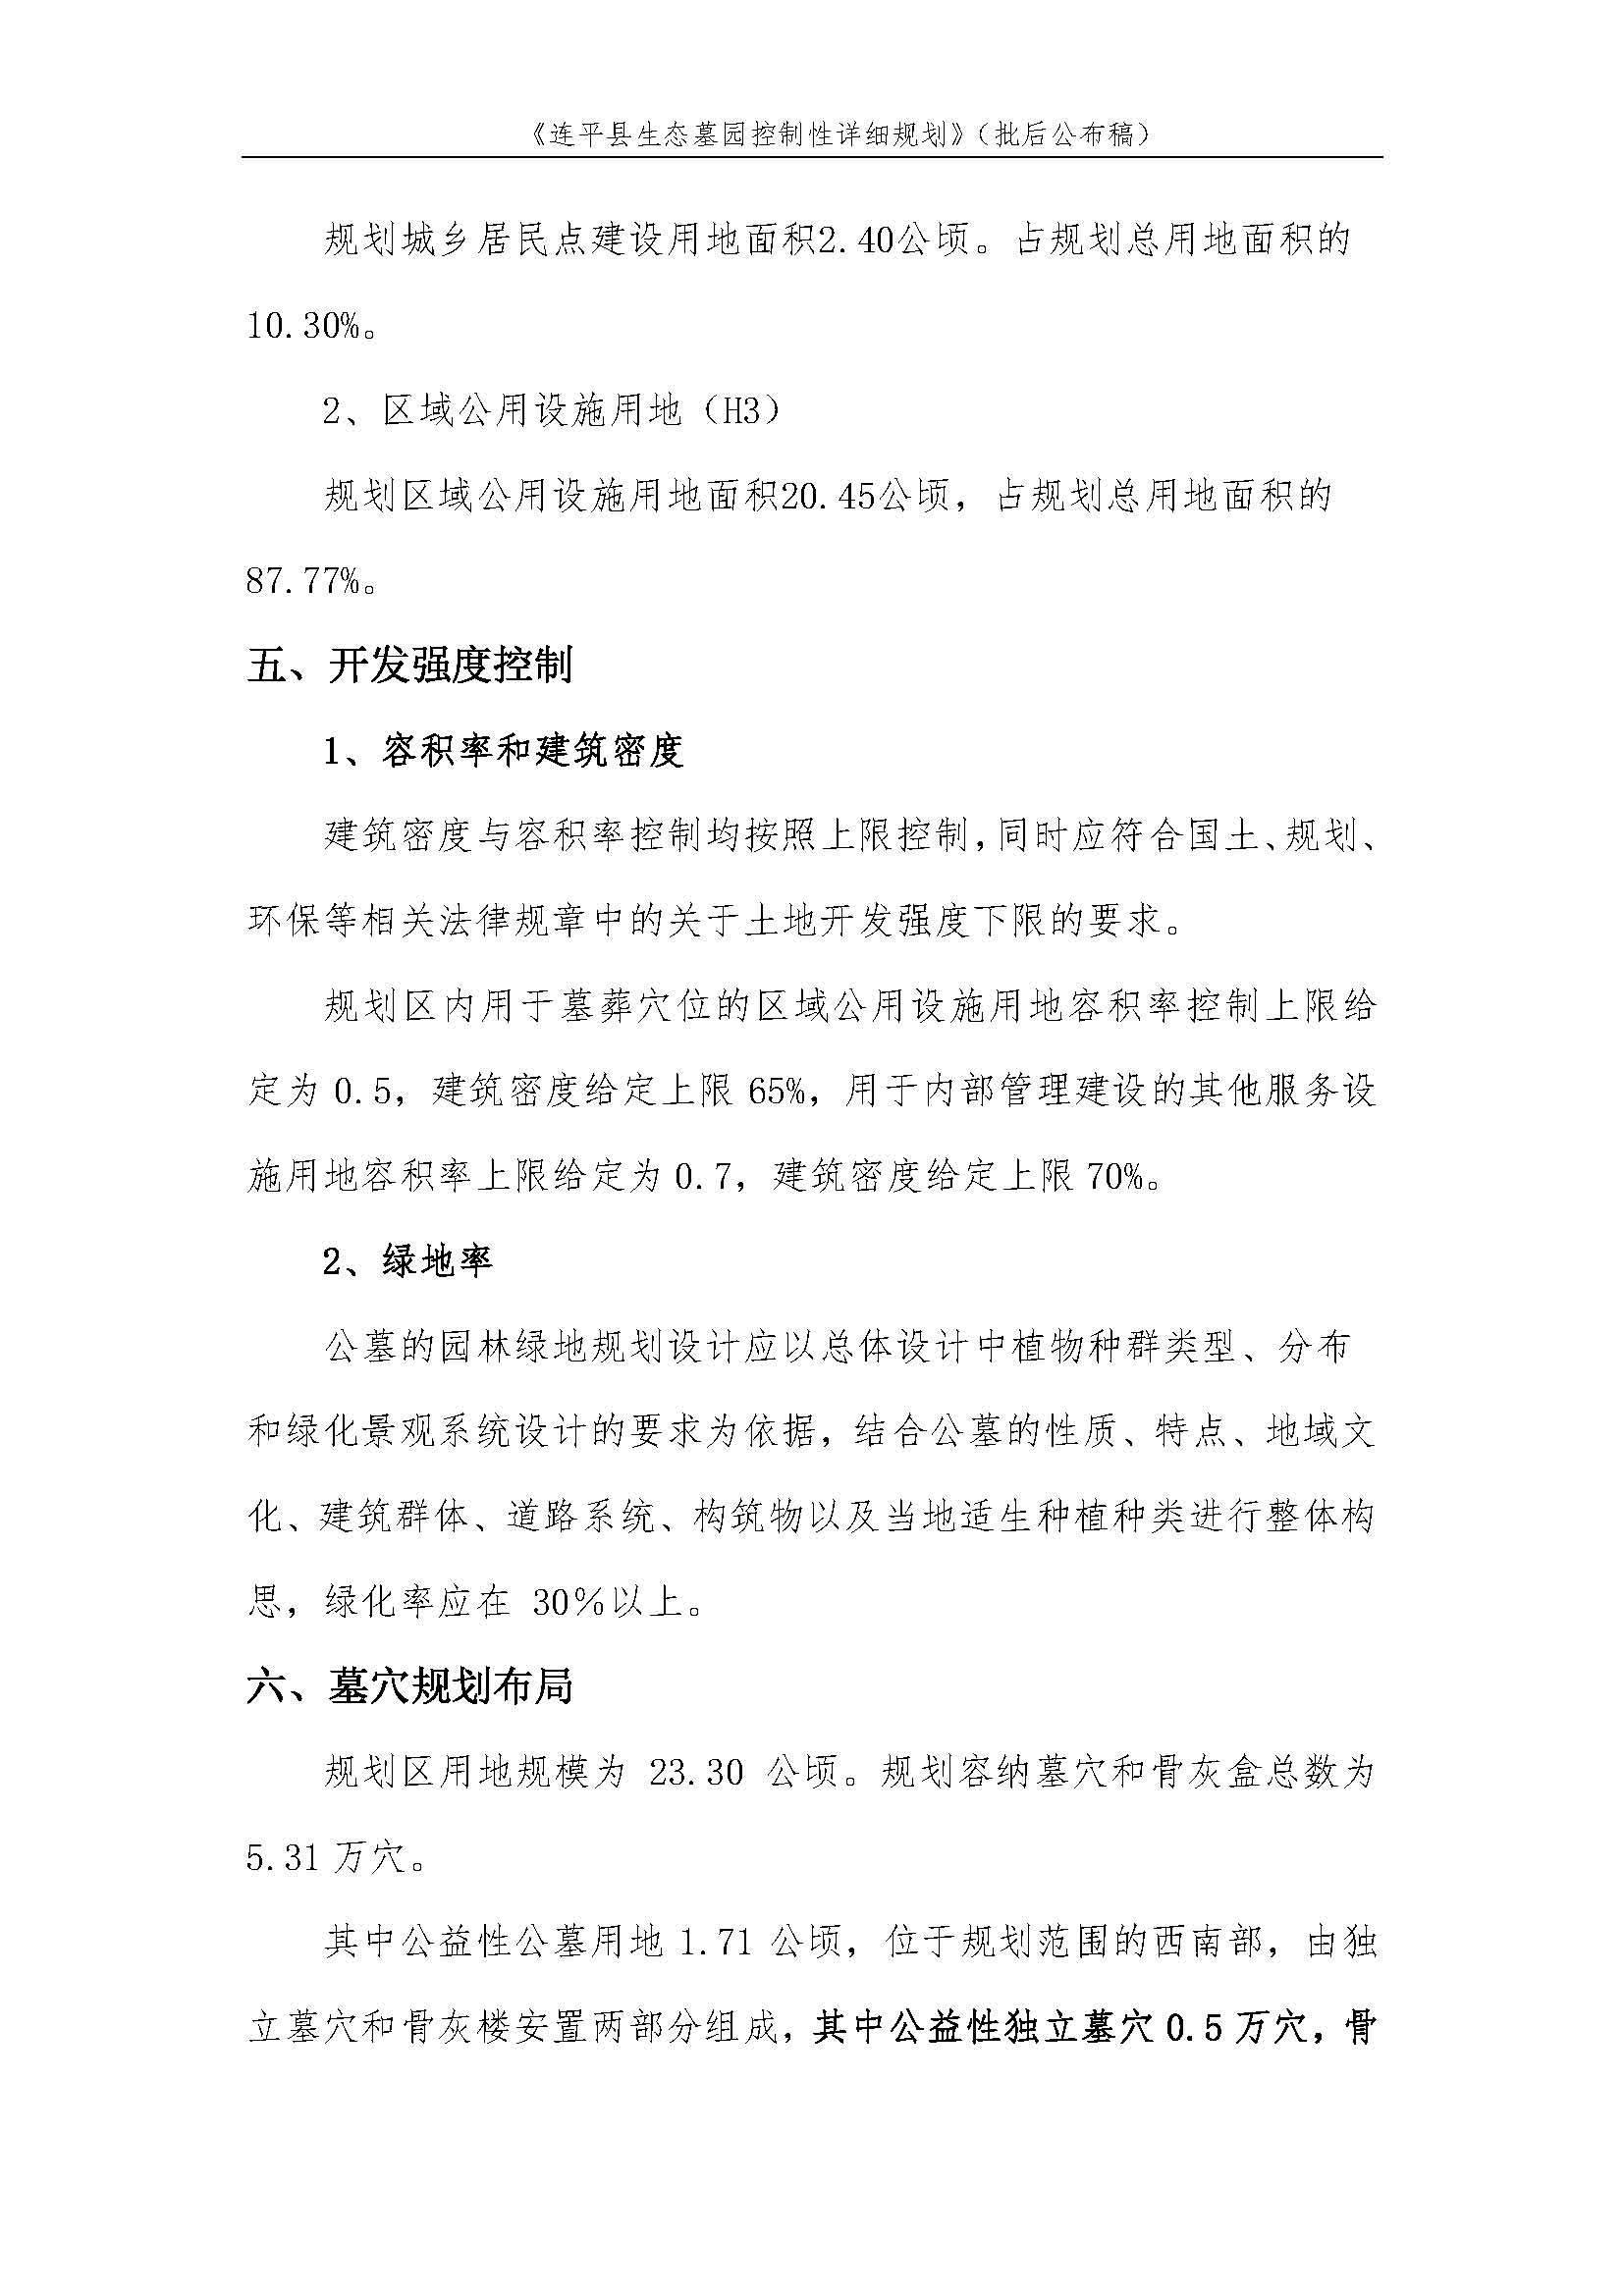 连平县生态墓园控制性详细规划批后公布稿_页面_4.jpg